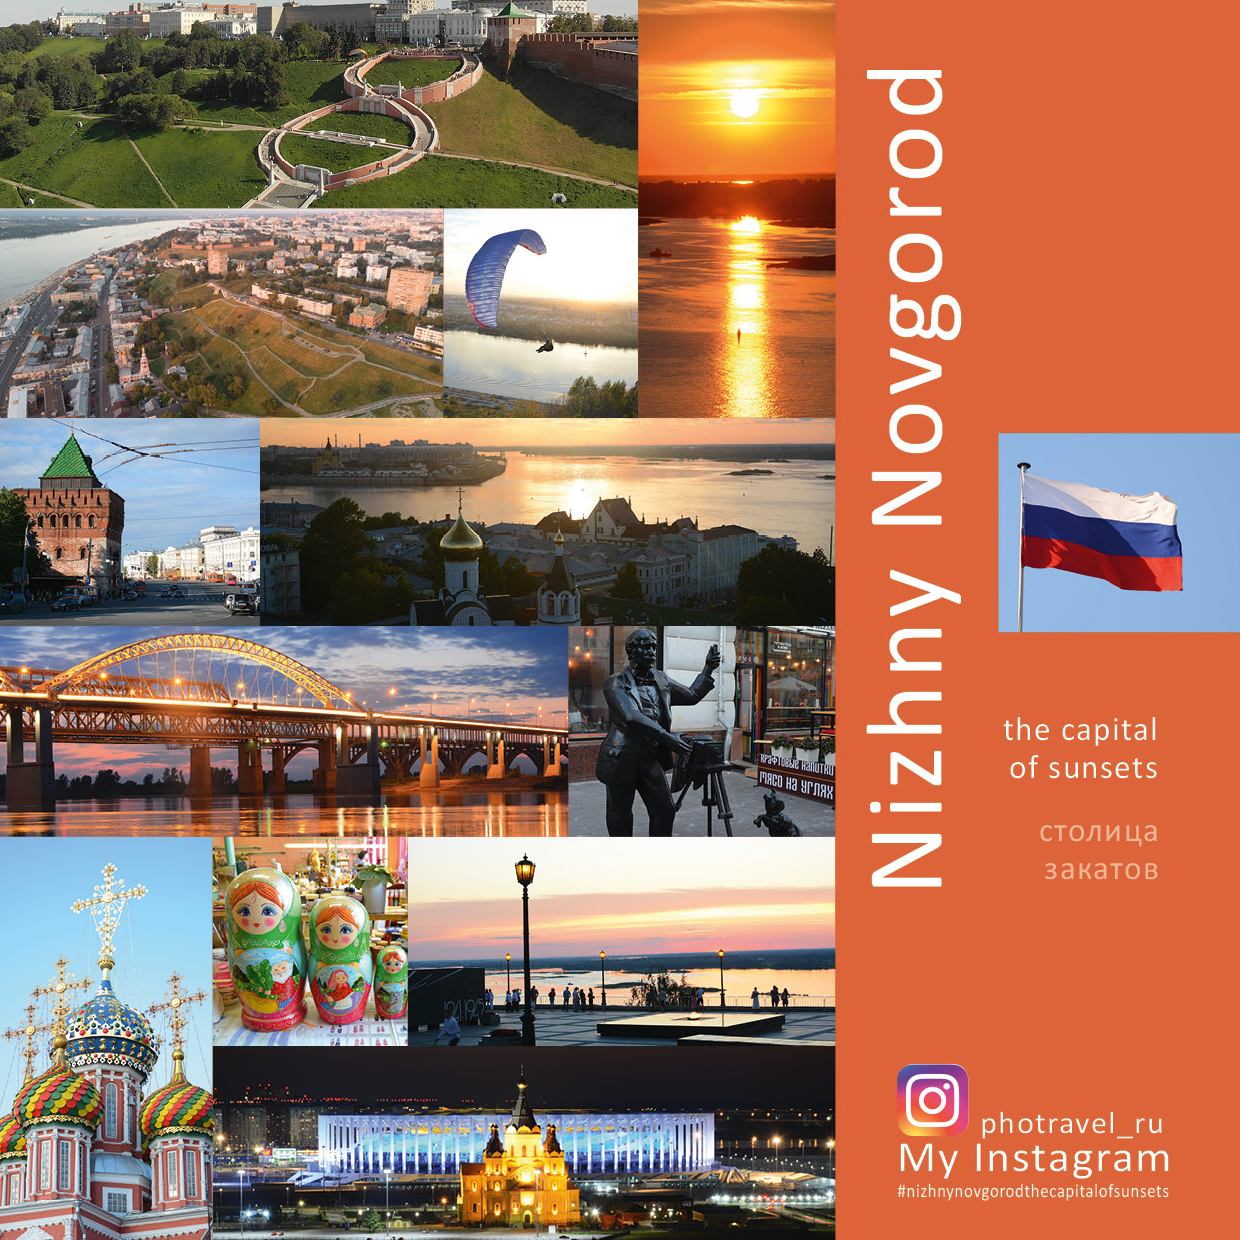 Nizhny Novgorod: The Capital of Sunsets